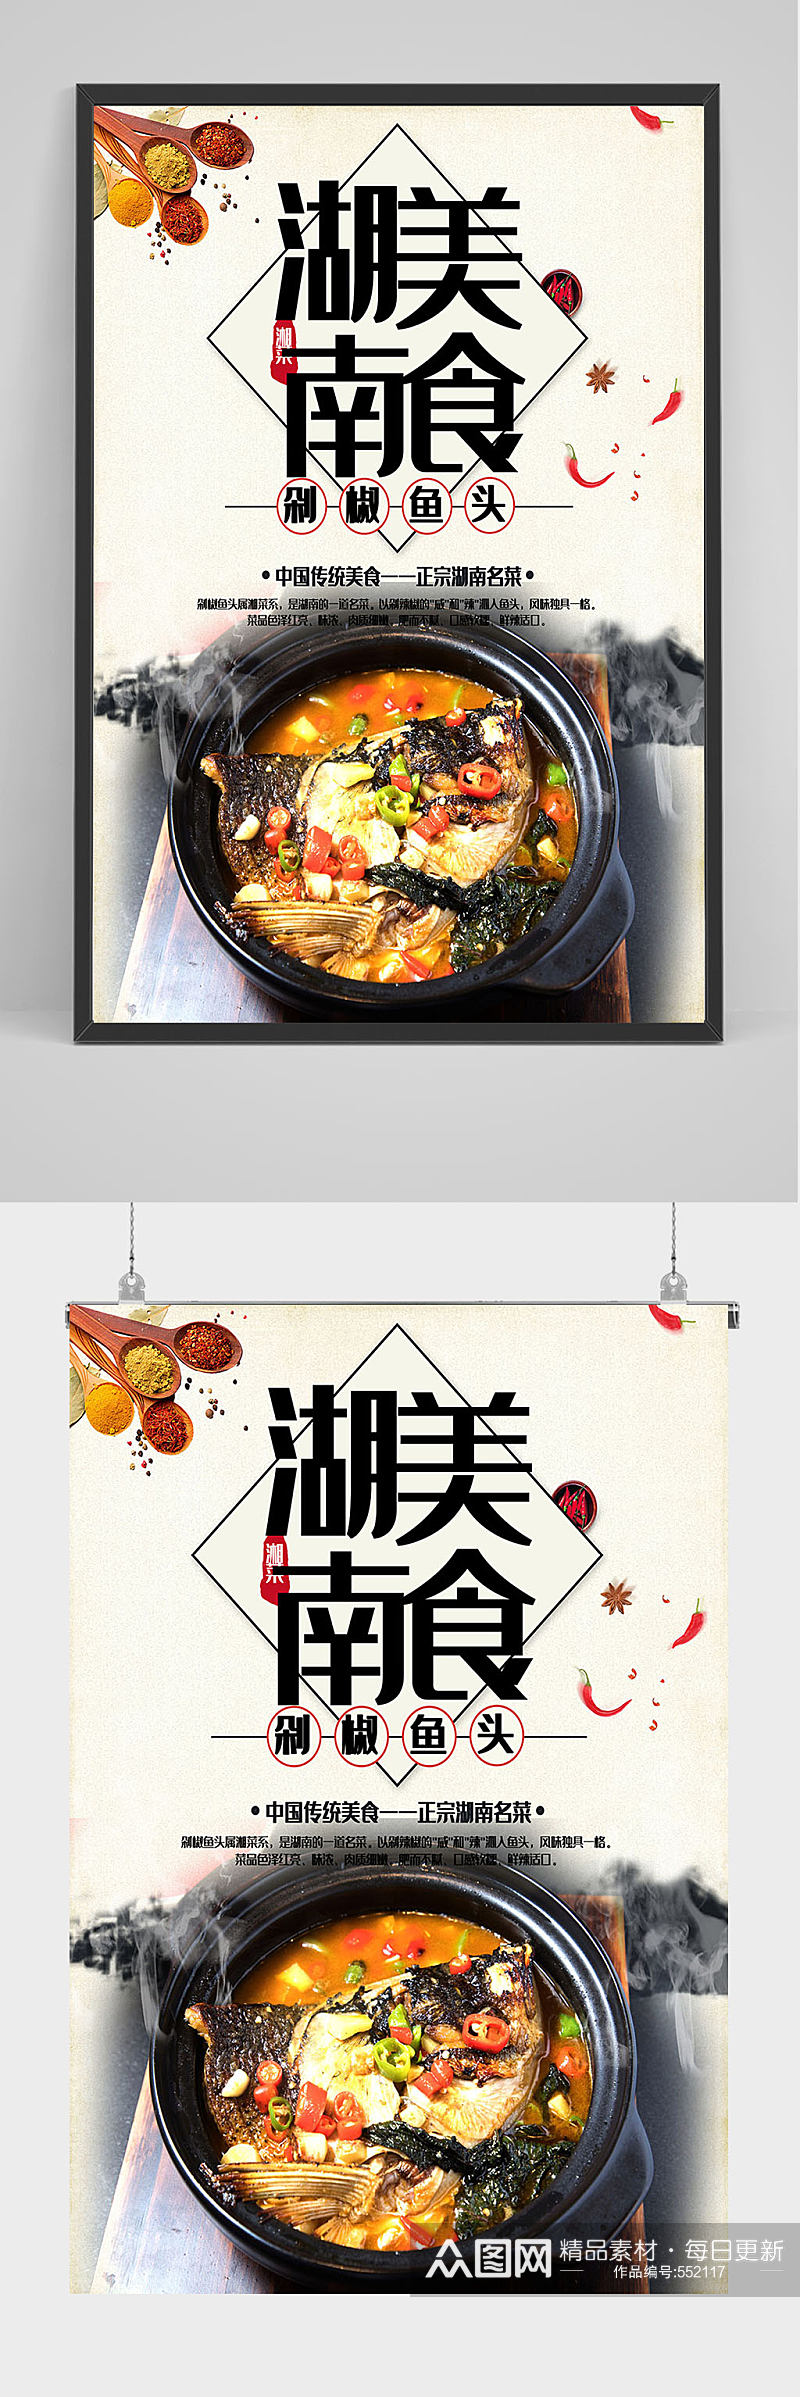 湖南美食剁椒鱼头海报设计素材